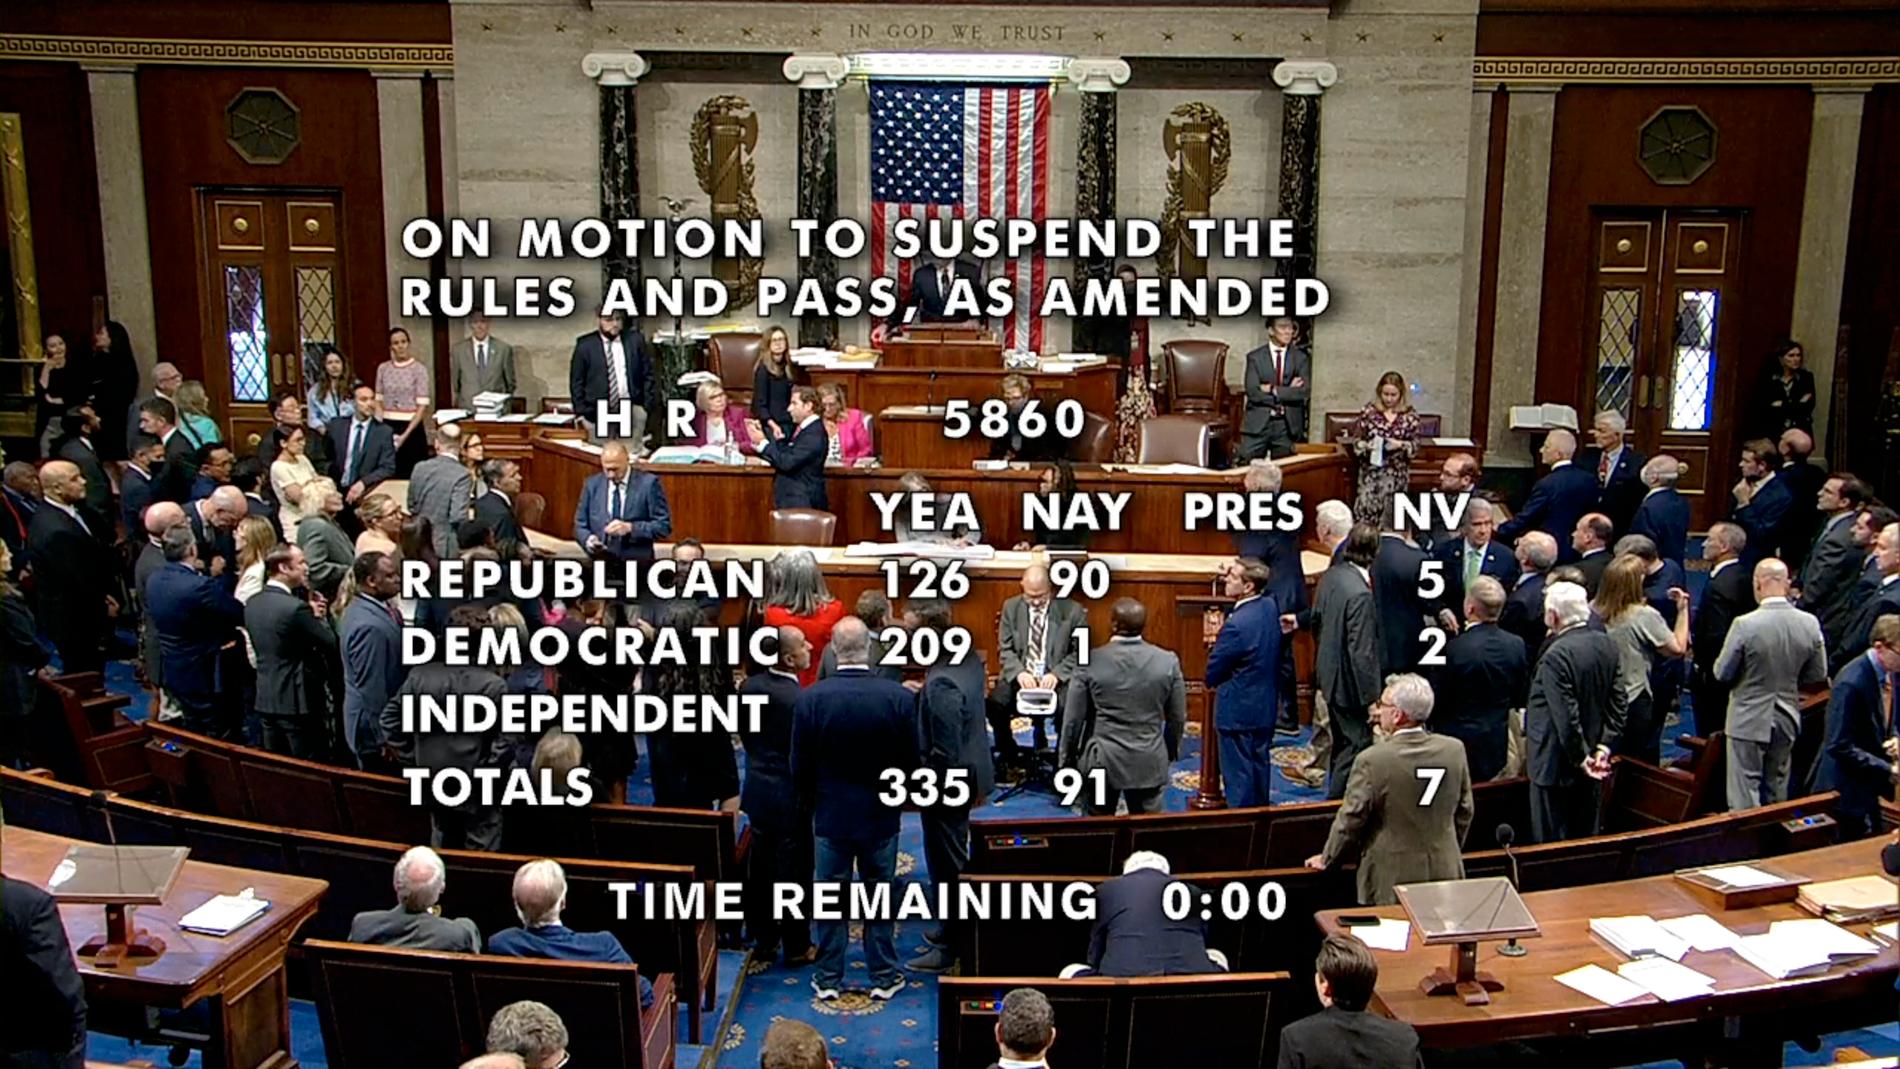 TV-bilde som viser at et flertall i Representantens hus stemte for et midlertidig budsjett som forlenge budsjettperioden og midlertidig avverger nedstengning av statsapparatet. 